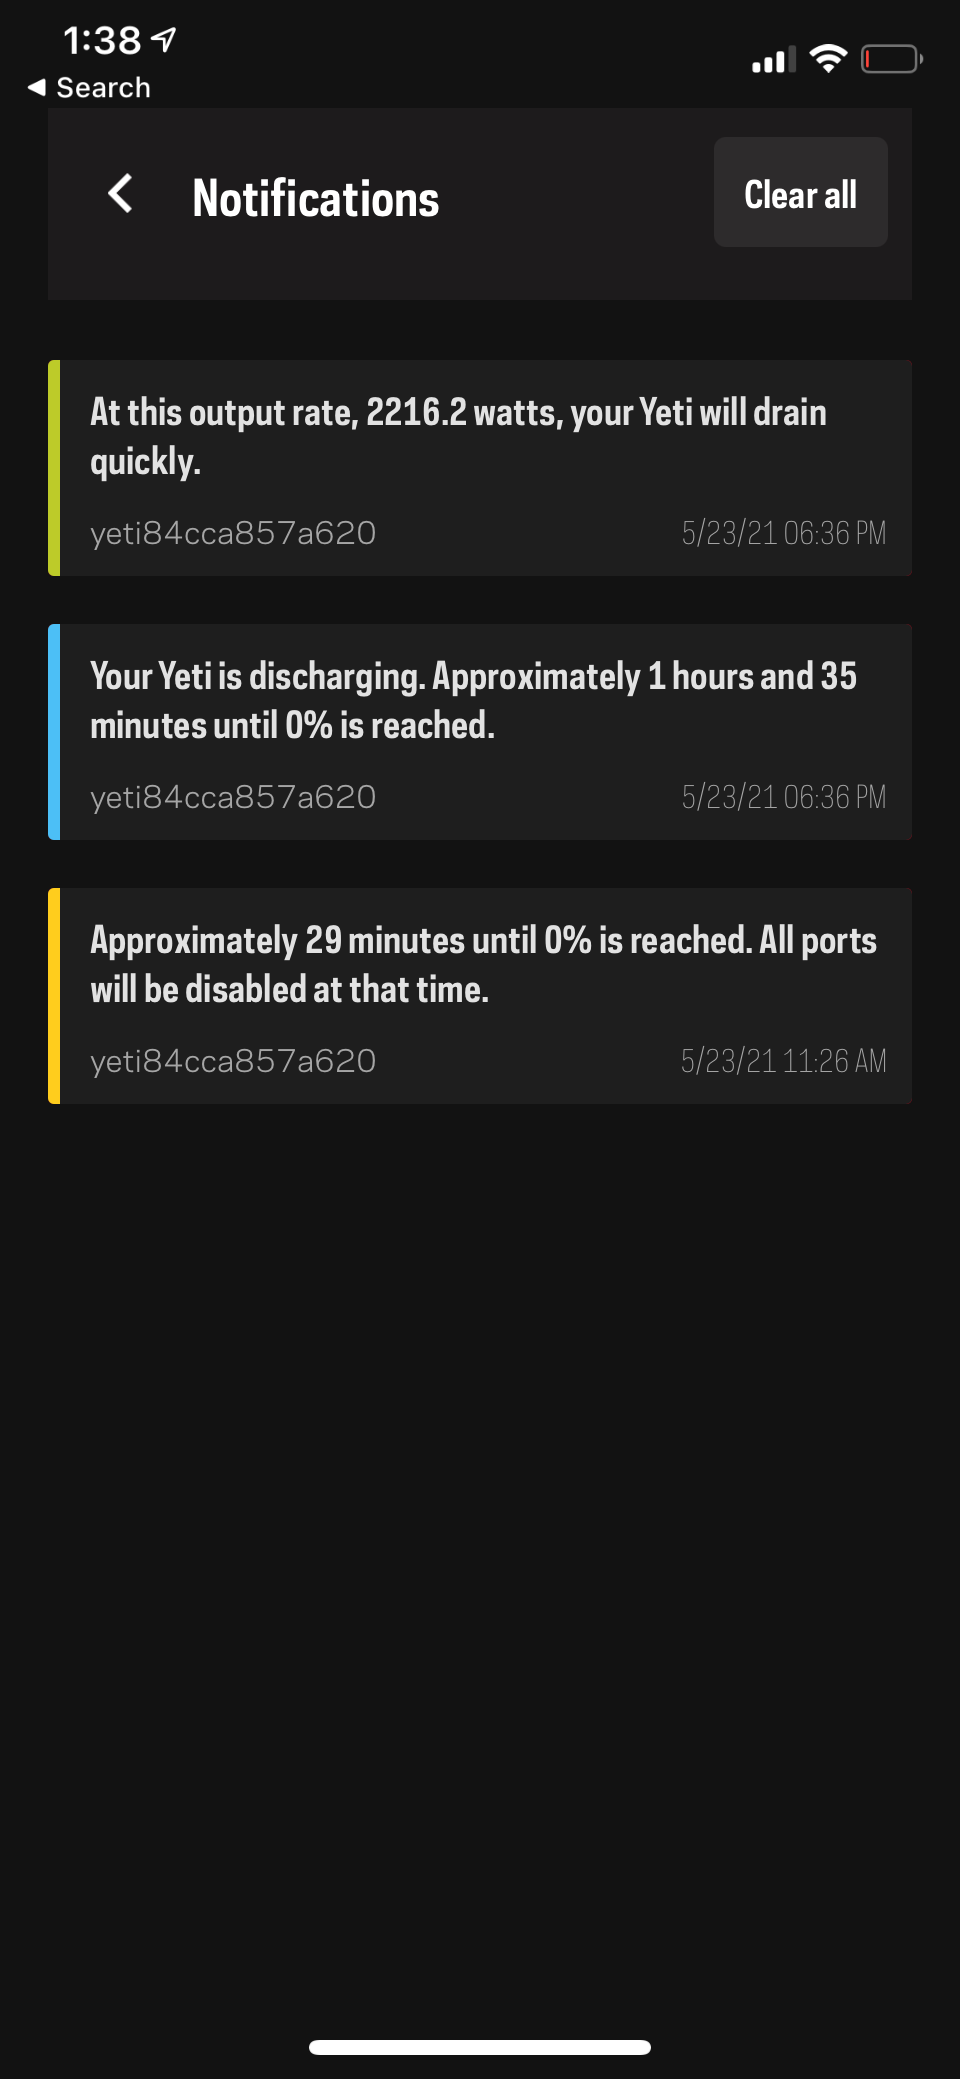 Goal Zero app notifications screen